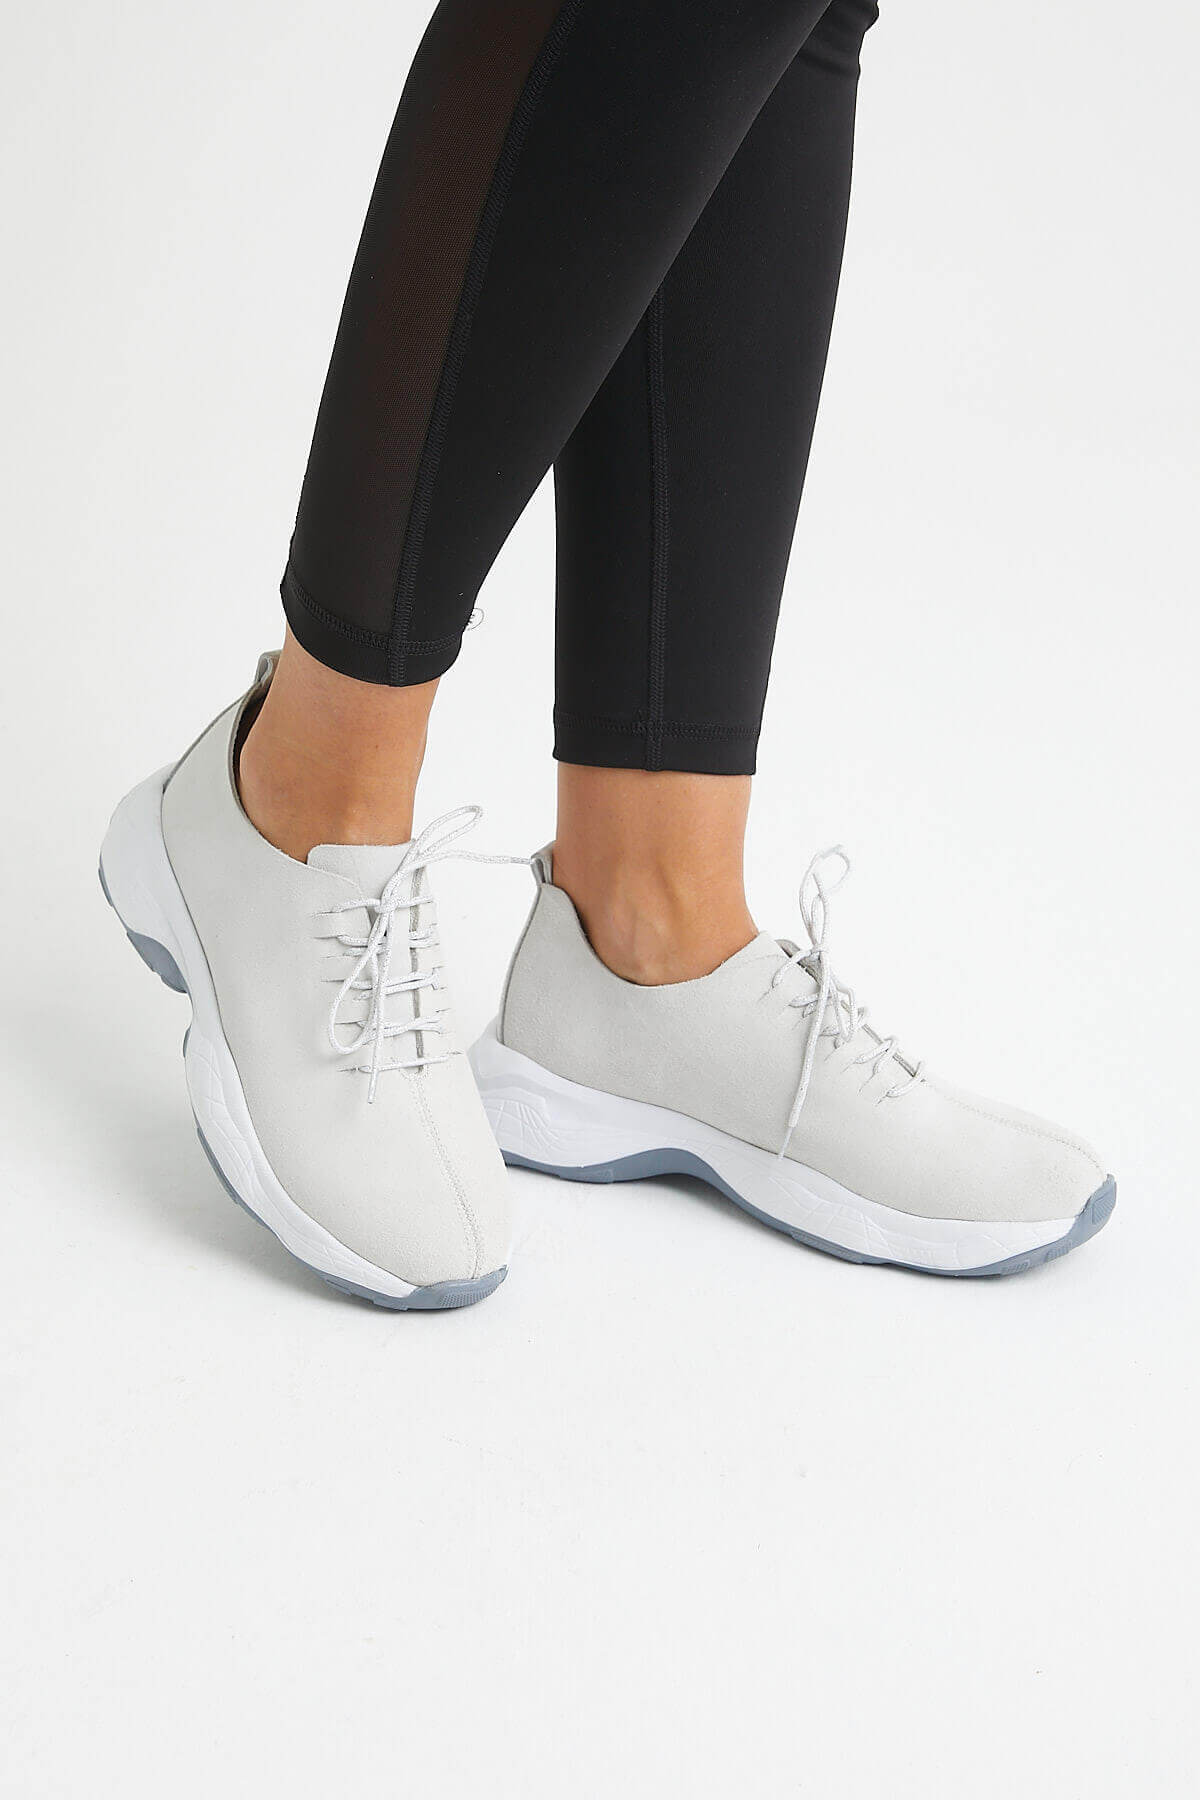 Kadın Deri Sneakers Beyaz 2014201Y - Thumbnail